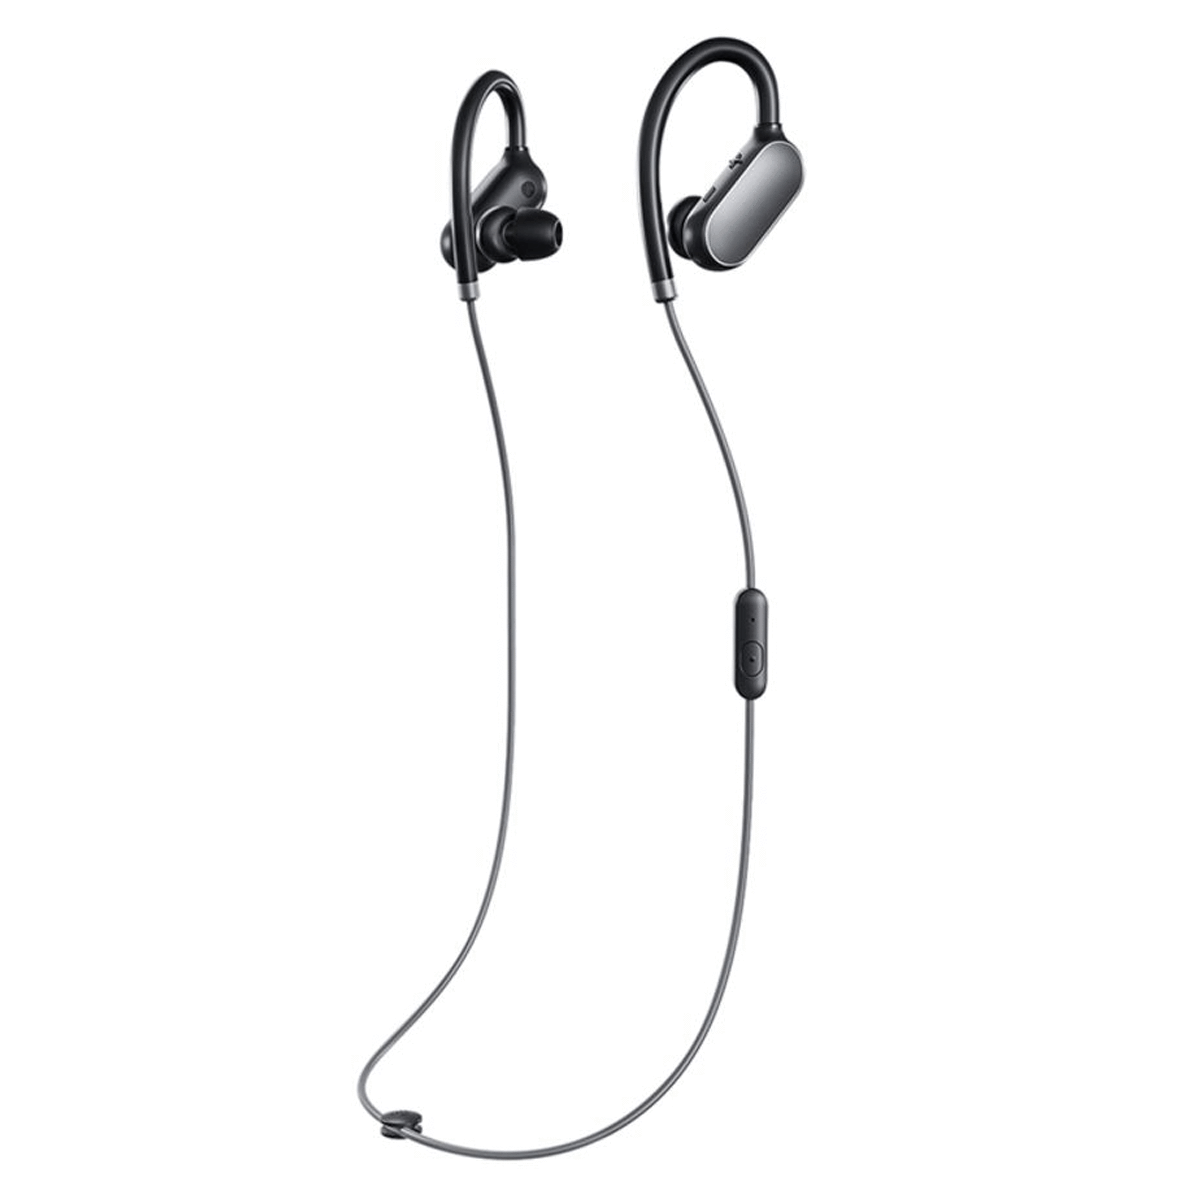 MI Sports Bluetooth In-Ear Earphones With Mic Black